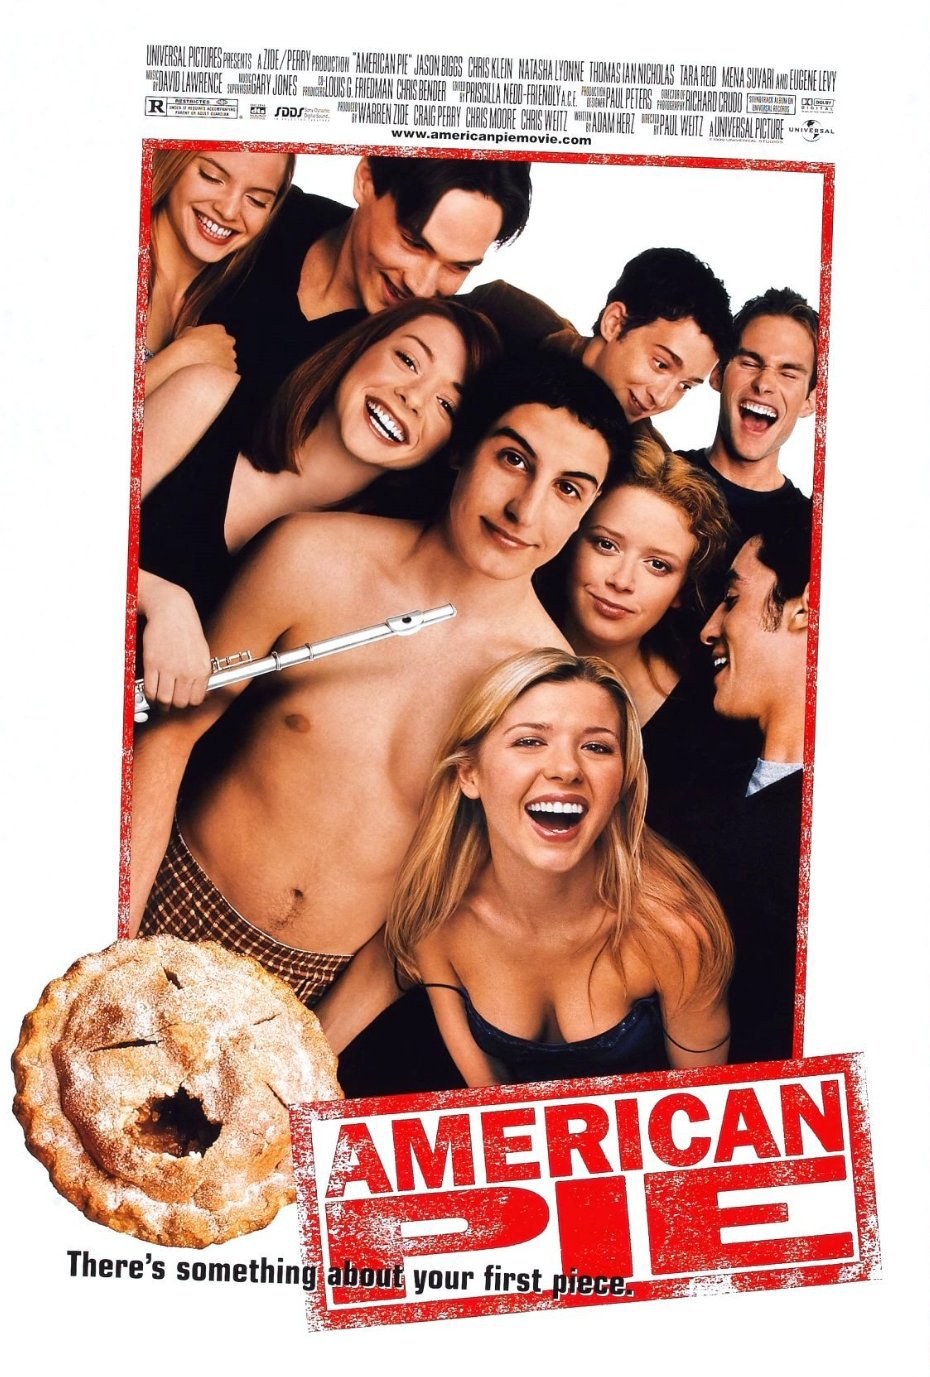 American pie full movie online